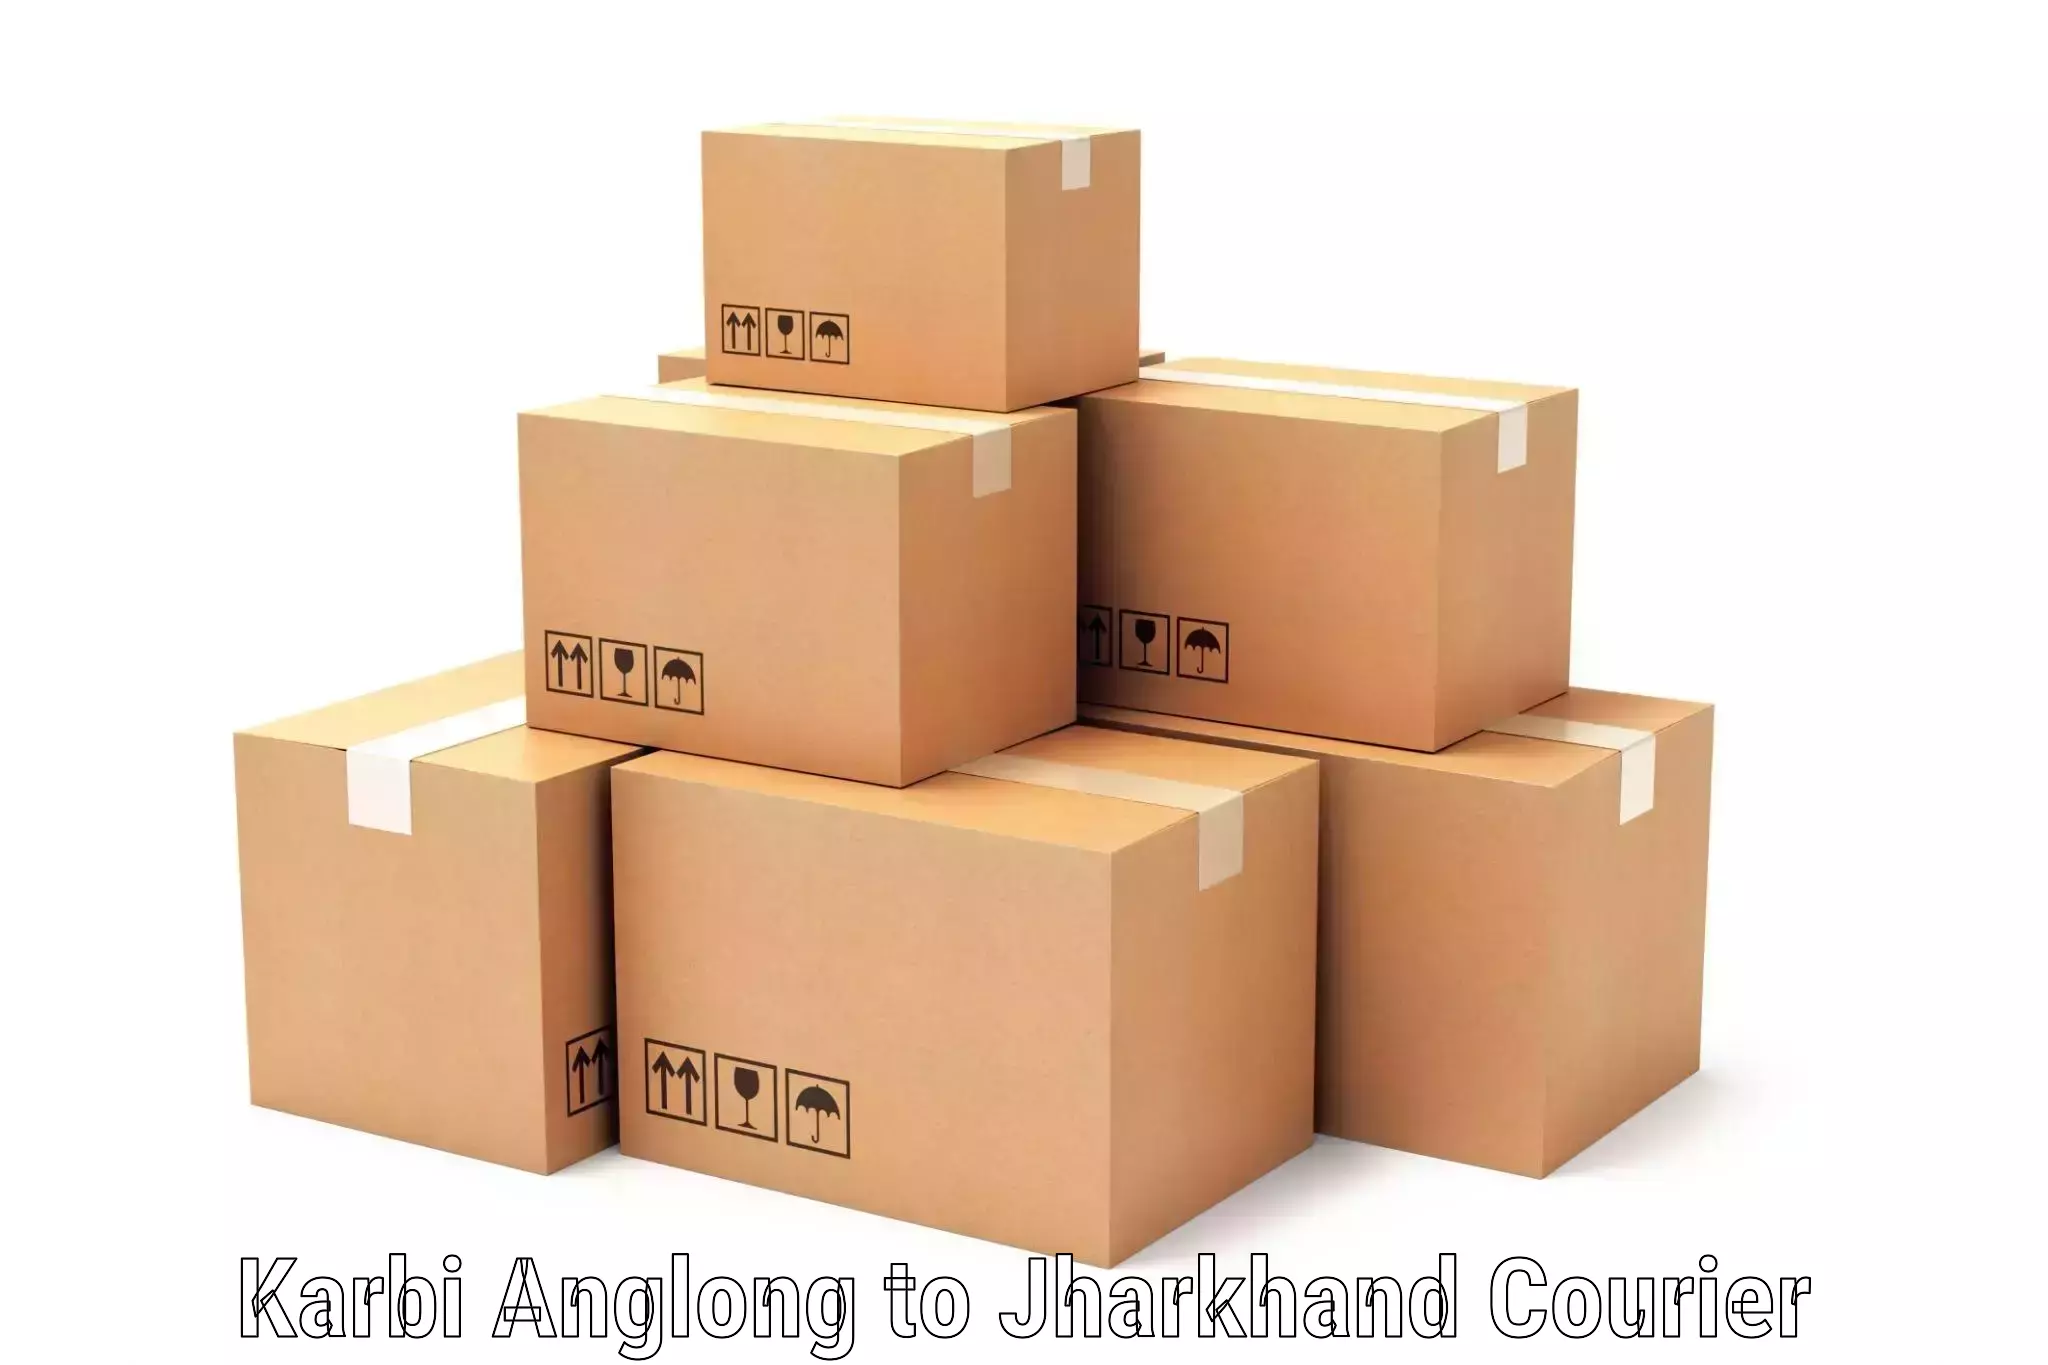 Global logistics network Karbi Anglong to Jharkhand